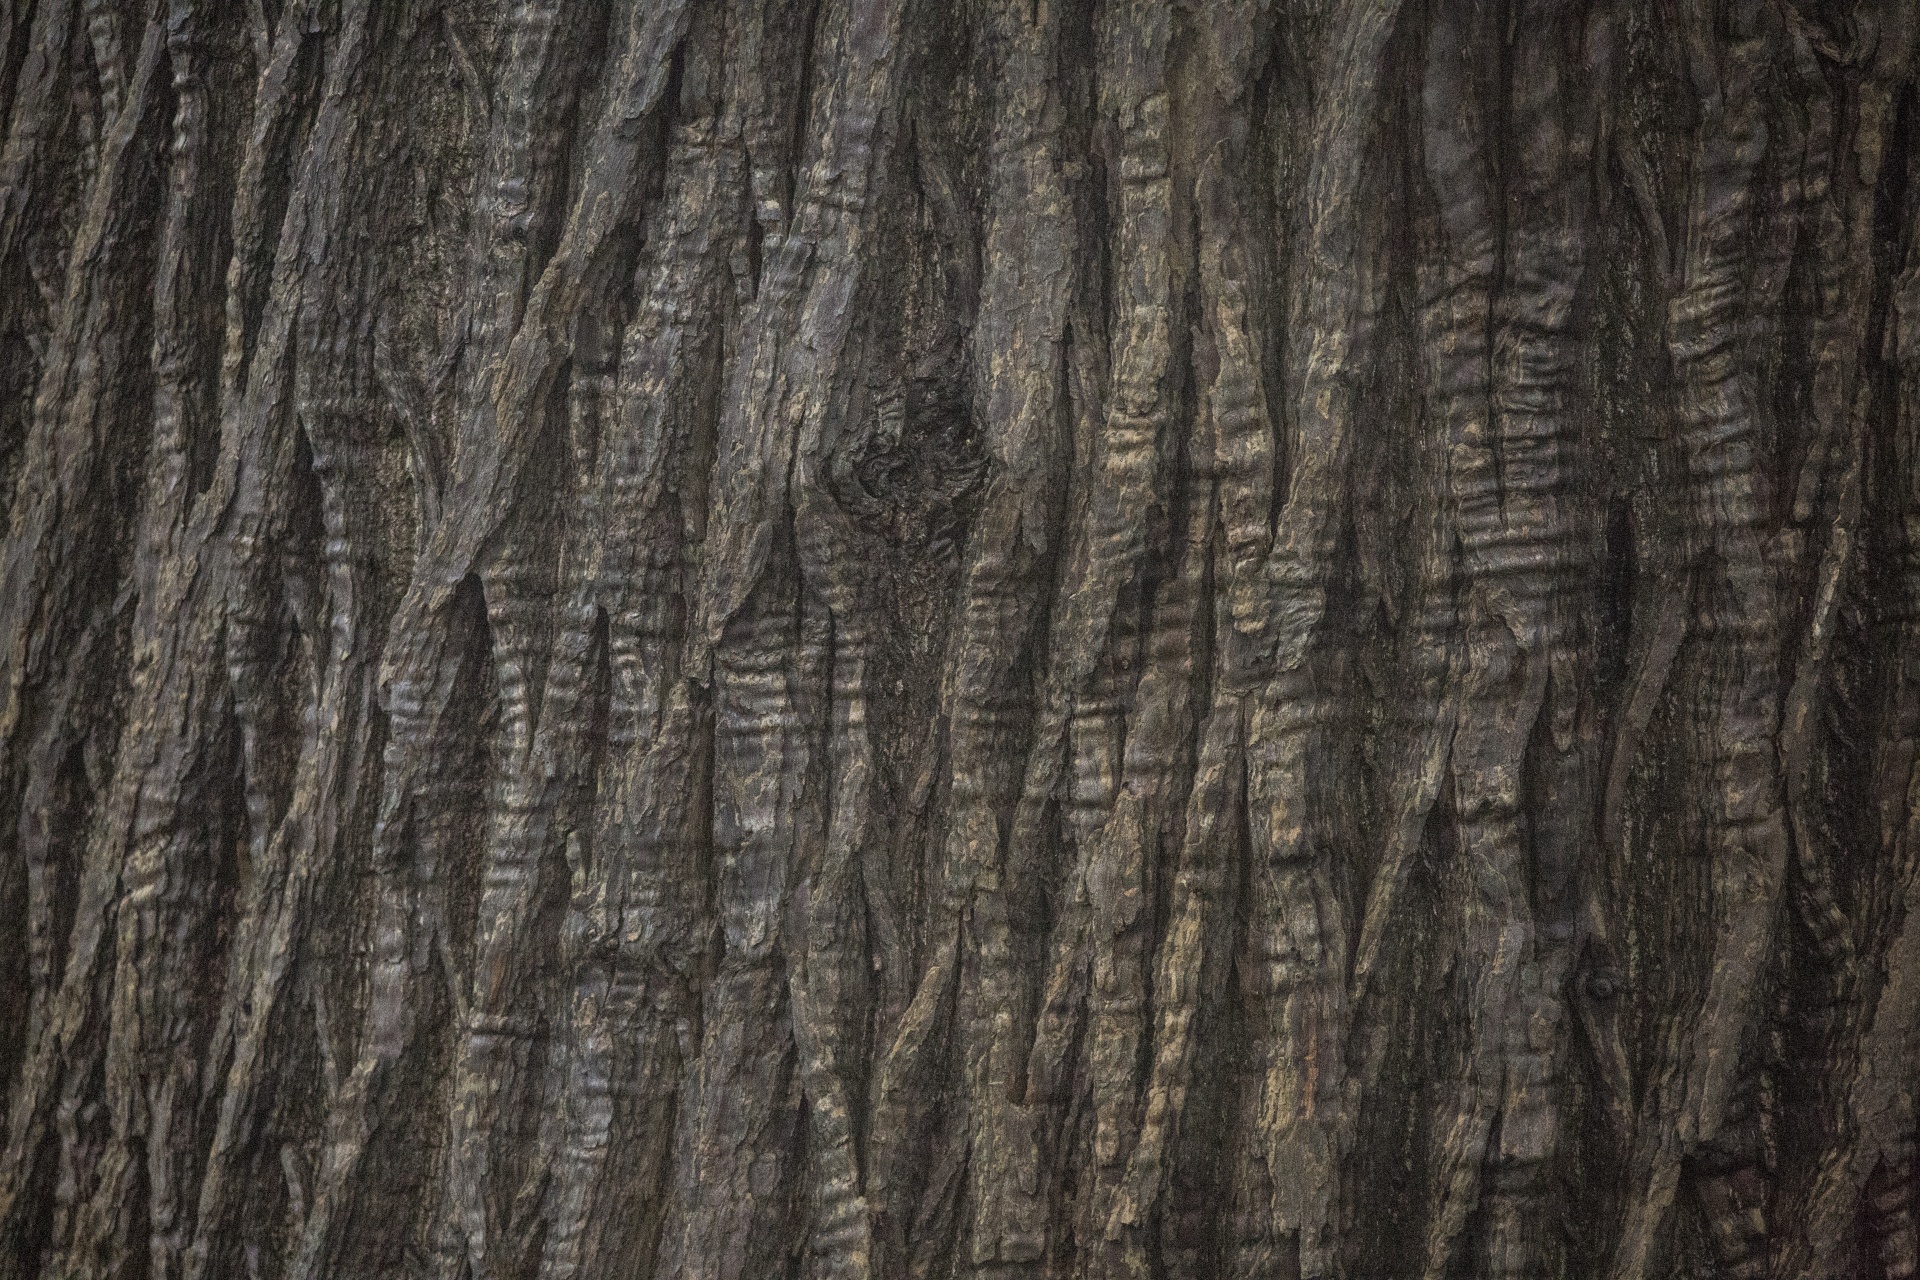 Tree Texture